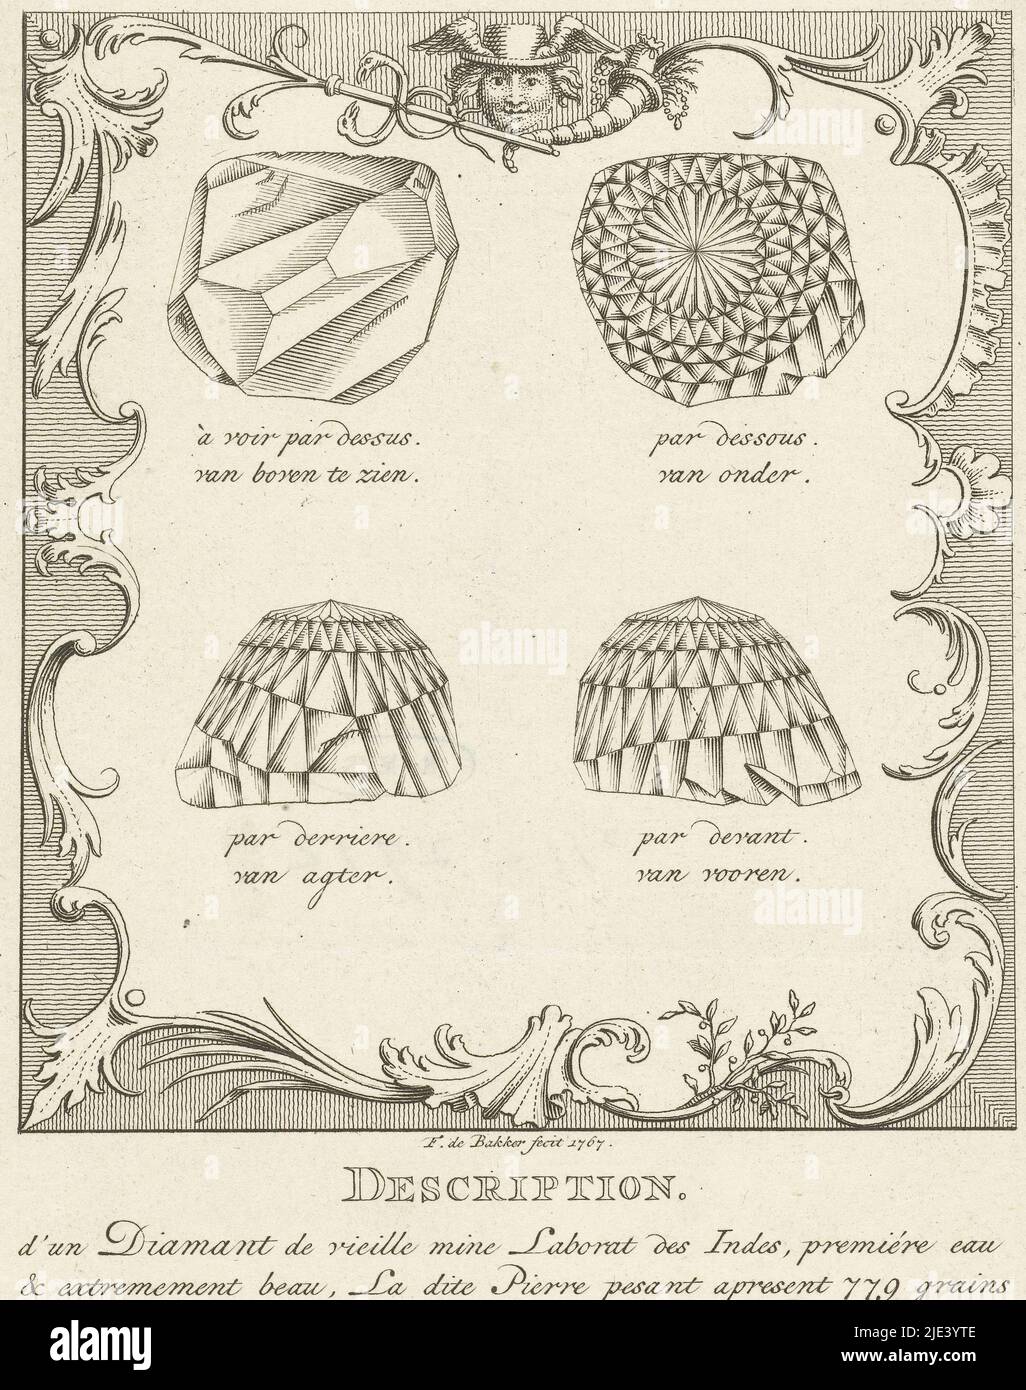 Quatre vues sur le diamant Orlov (Orloff), Frans de Bakker, 1767, quatre vues sur le diamant Orlov (Orloff). Avec une légende descriptive en français et néerlandais sur le diamant et son propriétaire iranien Gregorio Saffraz d'Amsterdam. Le diamant de 189 carats a été mis aux enchères à Amsterdam en 1767 et vendu au comte Grigory Orlov (1734-1783). Il a donné le diamant comme cadeau à sa maîtresse, l'impératrice Catherine la Grande (1729-1796) et elle a eu le diamant dans le sceptre impérial en 1774., imprimeur: Frans de Bakker, (mentionné sur l'objet), Amsterdam, 1767, papier, gravure, gravure, h 210 mm × l 123 mm Banque D'Images